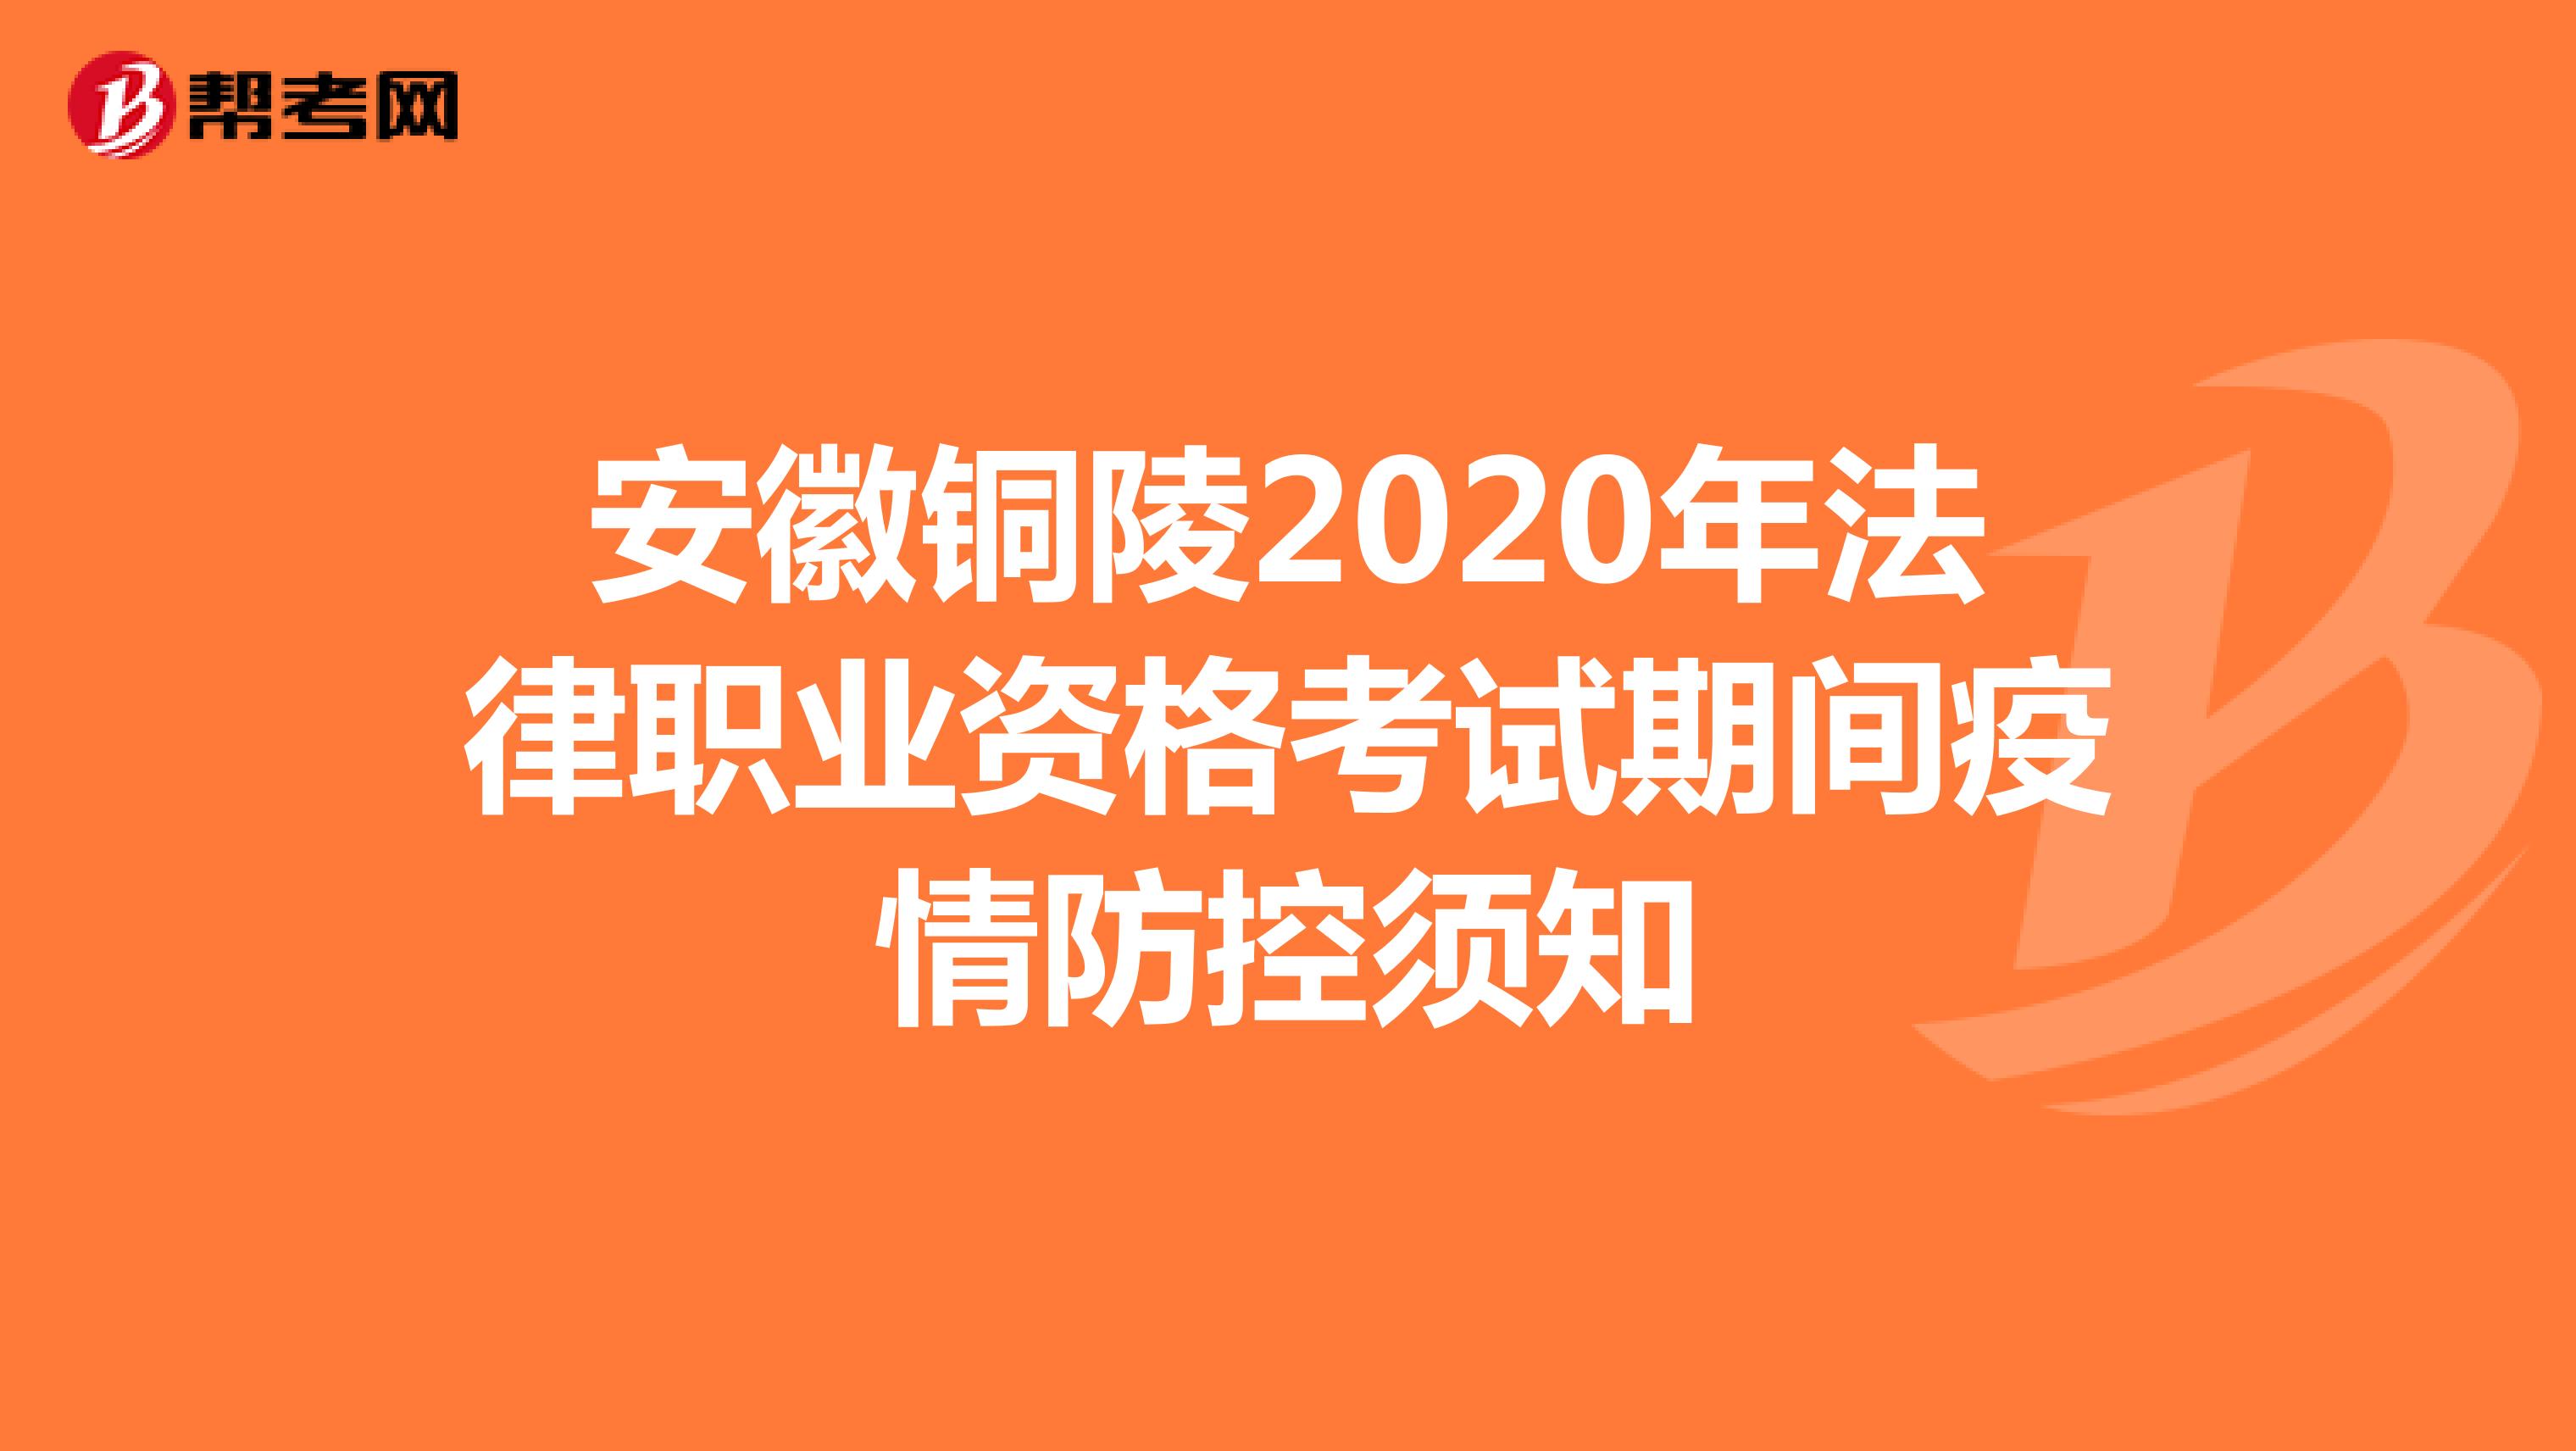 安徽铜陵2020年法律职业资格考试期间疫情防控须知